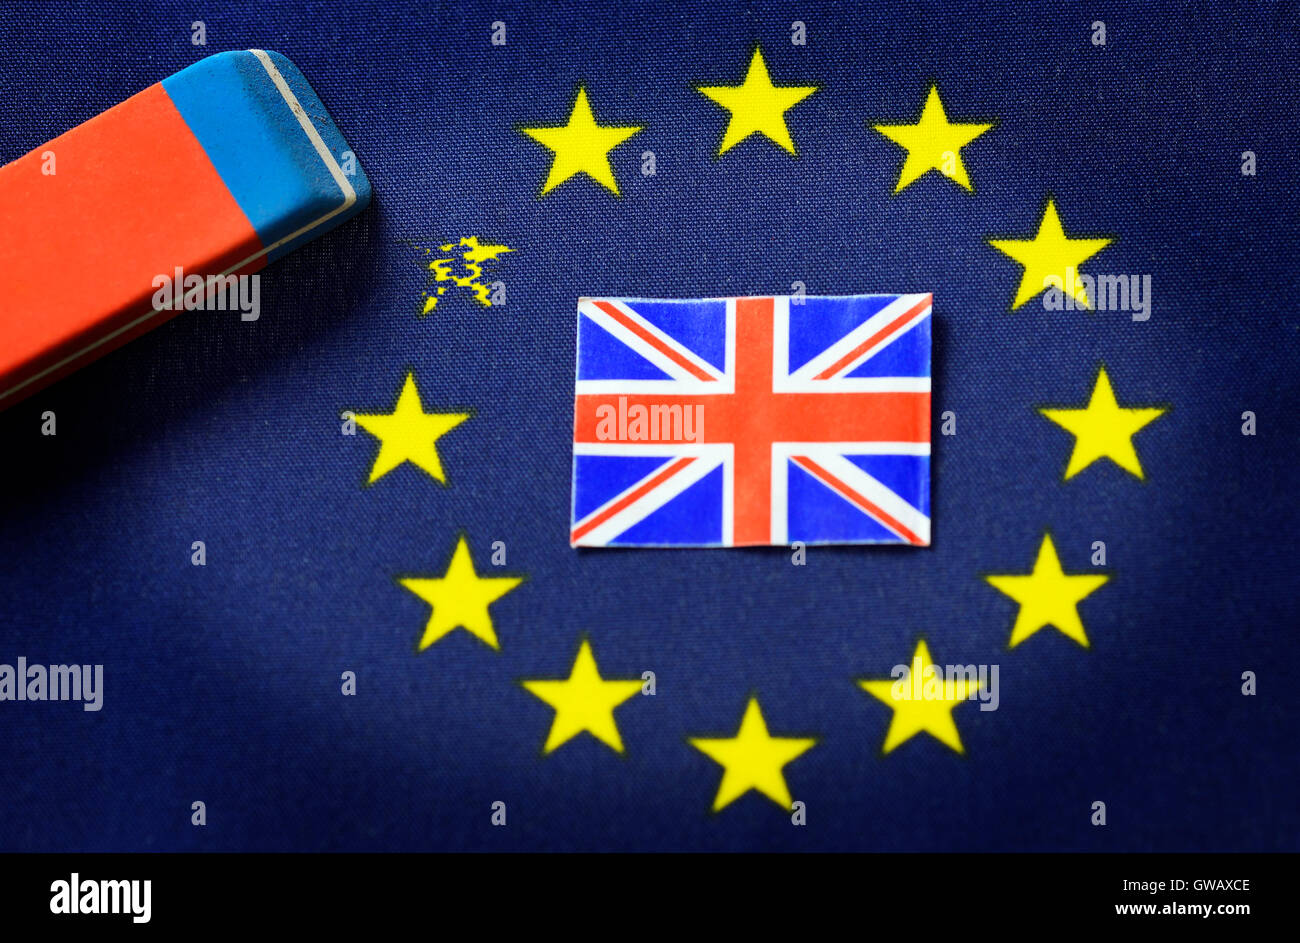 Dalla bandiera UE star è cancellata fuori, simbolico Brexit foto, Aus UE-Fahne wird Stern ausradiert, Symbolfoto Brexit Foto Stock